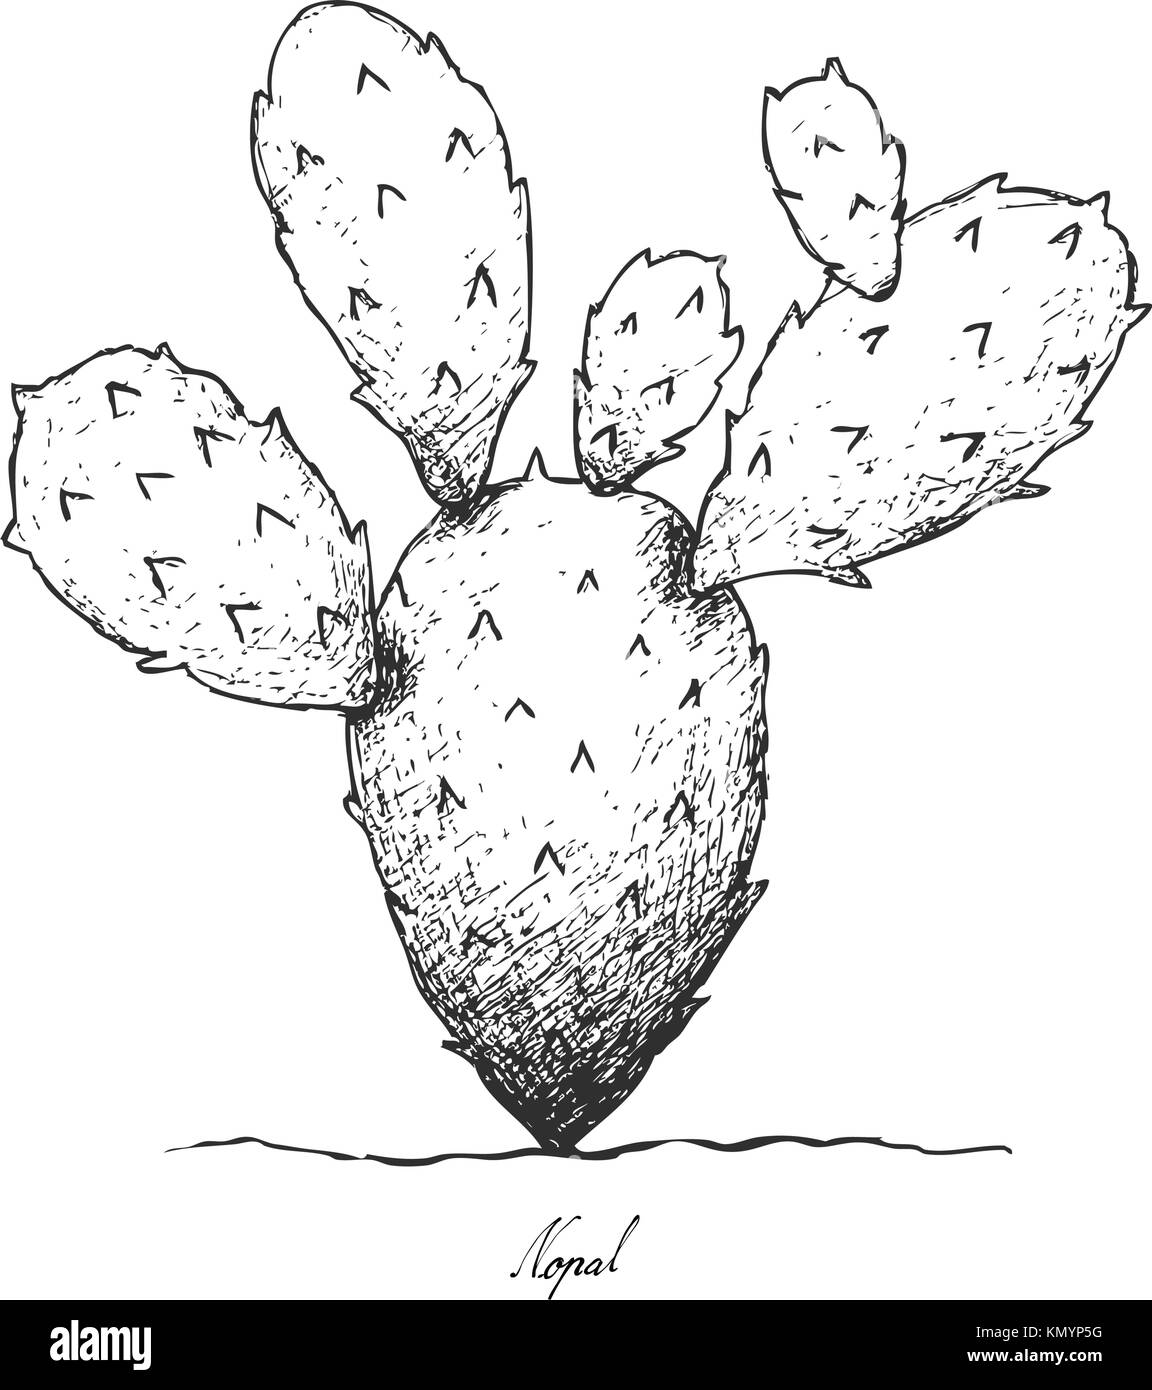 Ortaggi a stelo, Illustrazione disegnata a mano schizzo di nopal cactus o ficodindia cactus isolato su sfondo bianco Illustrazione Vettoriale